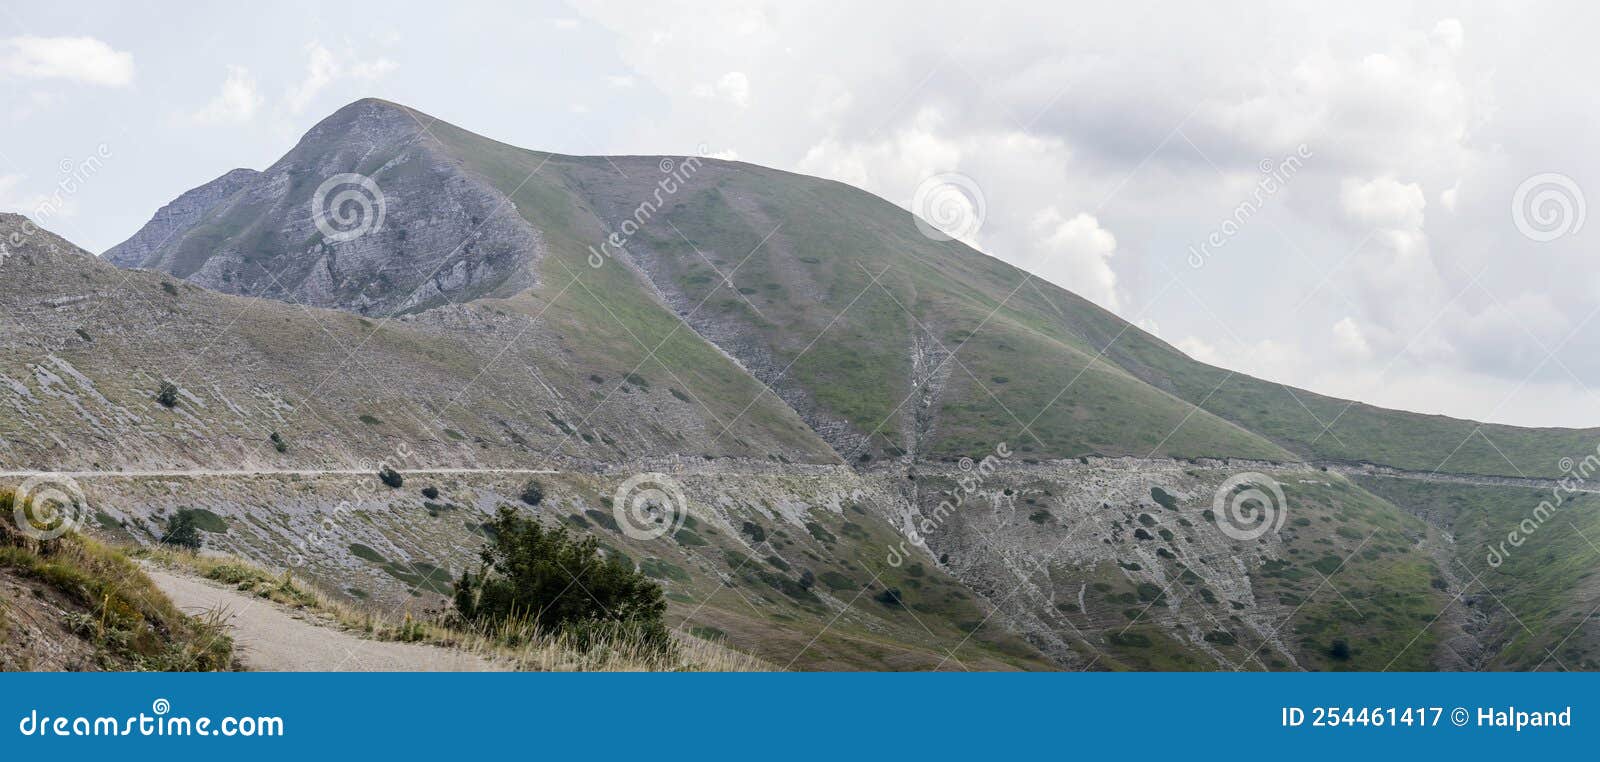 di cambio peak barren slopes, near rieti, italy